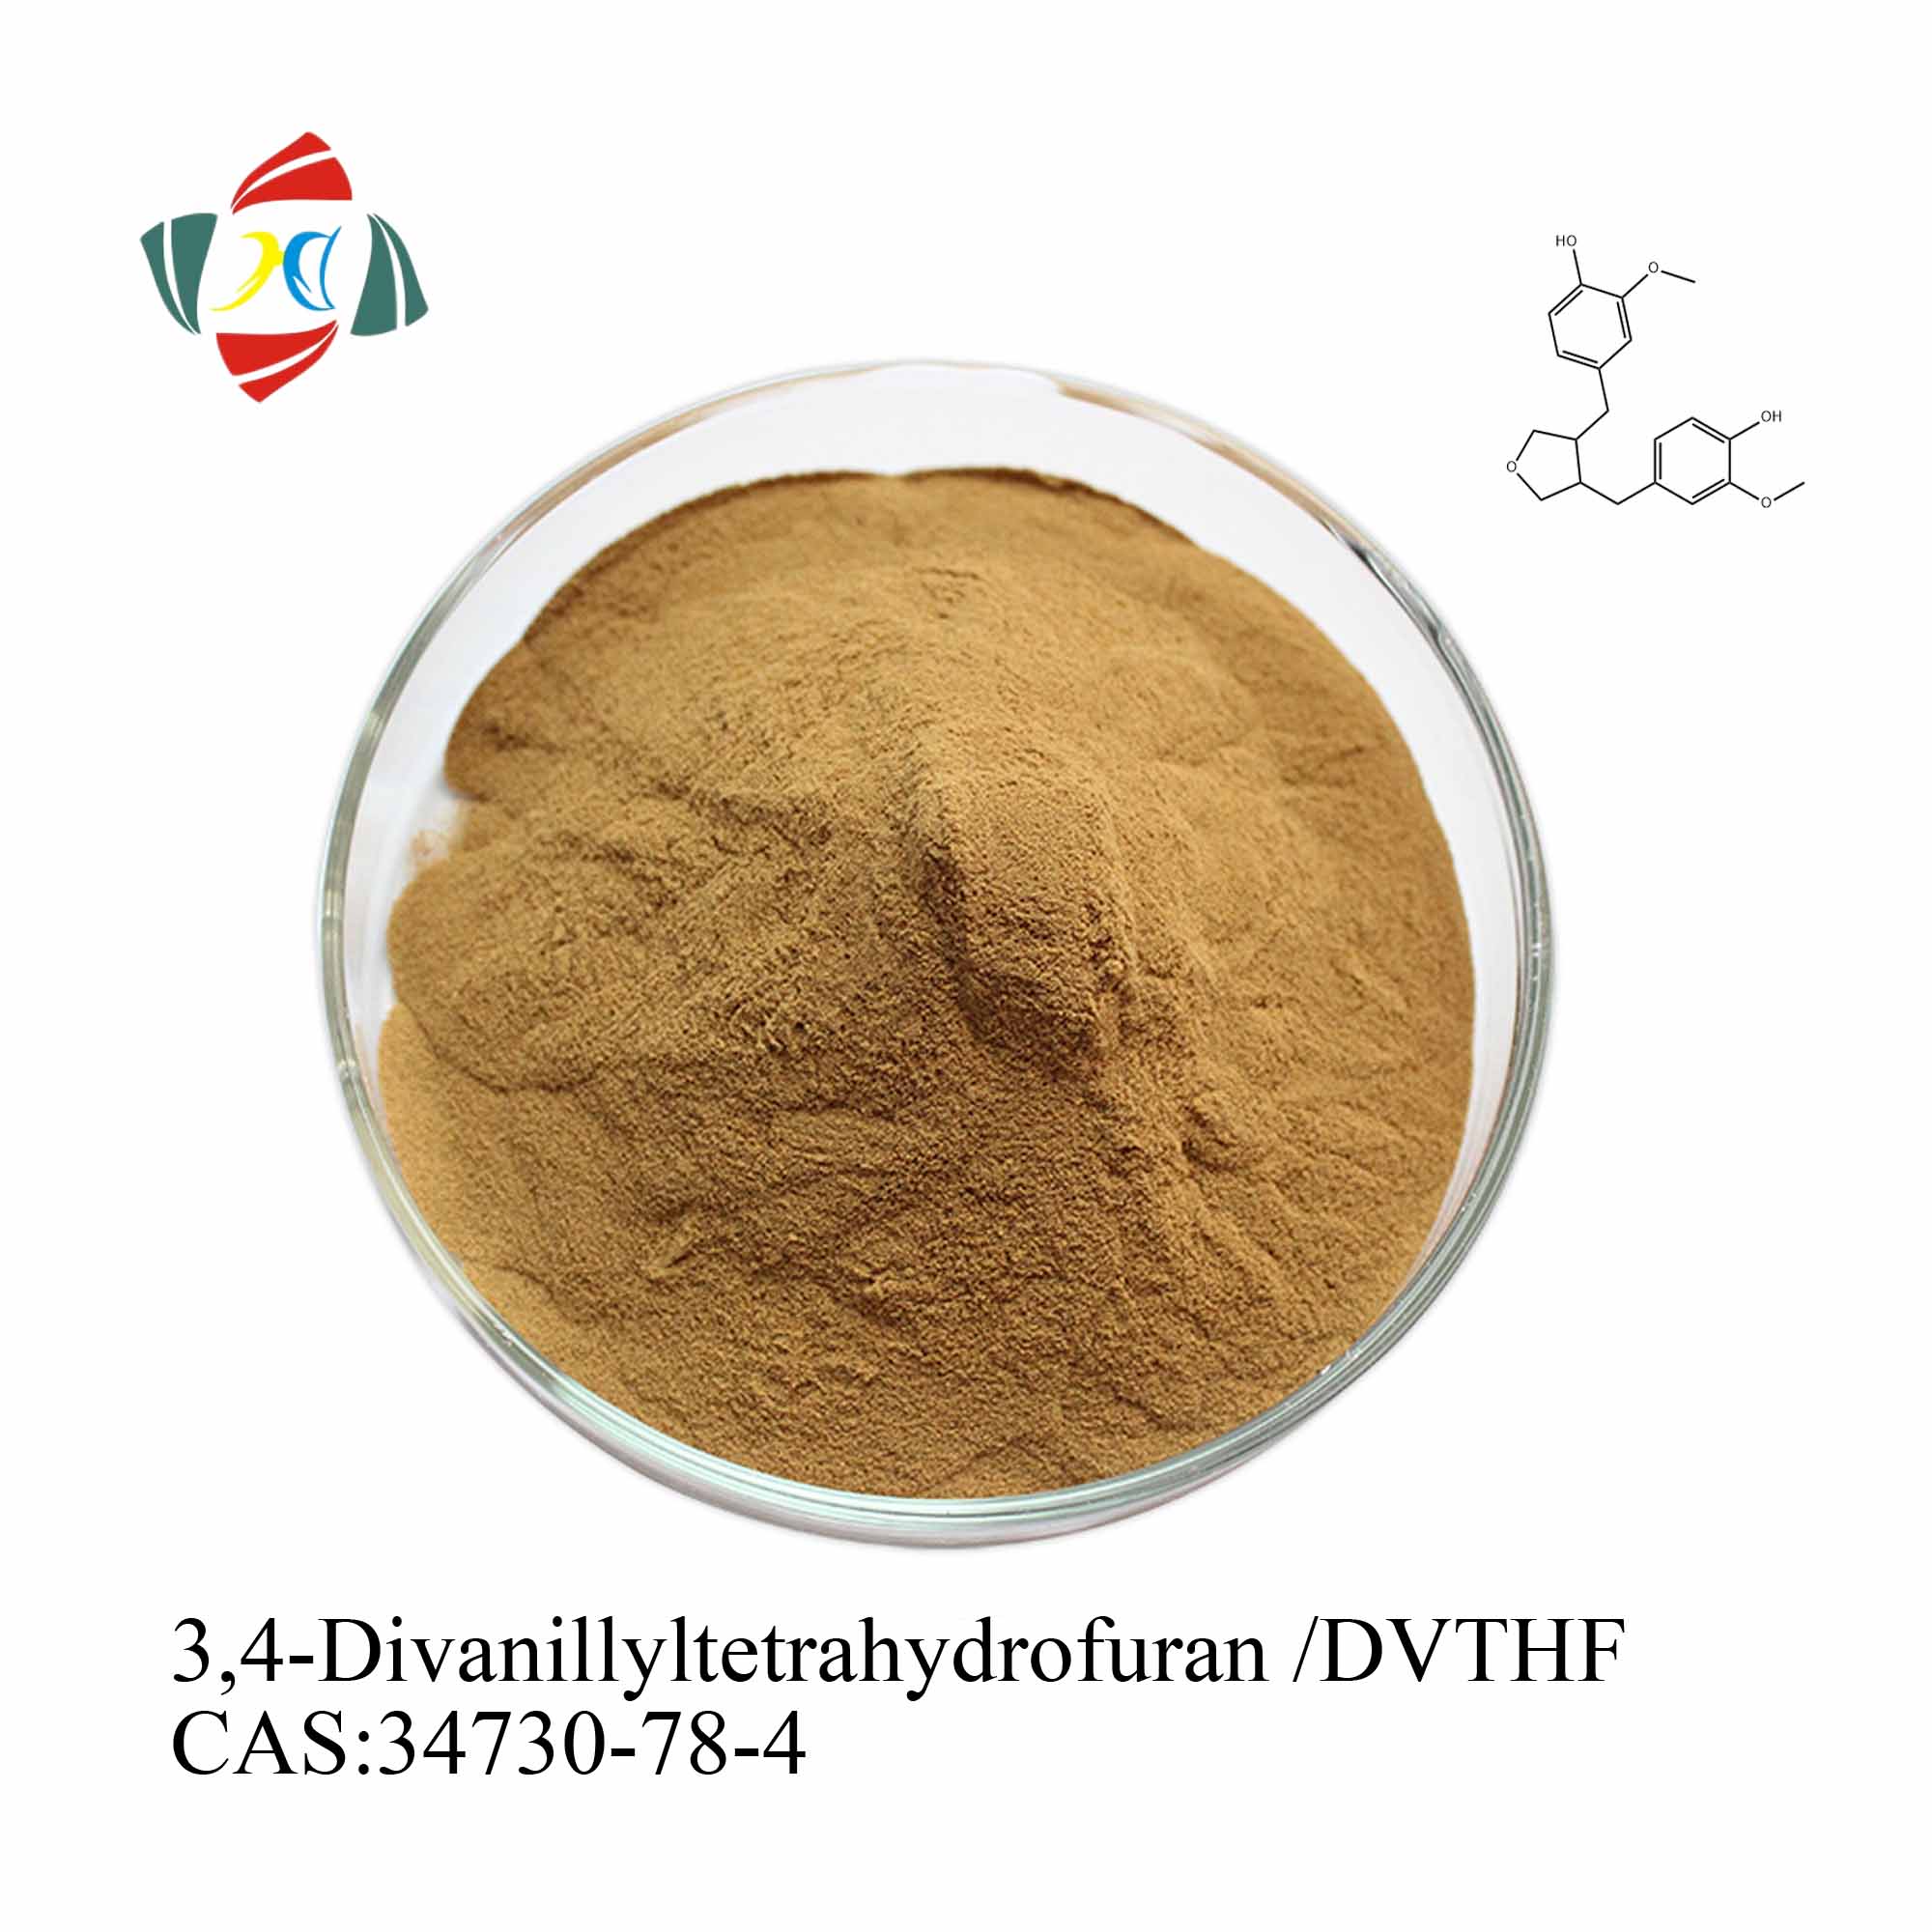 Comprar Extrato de raiz de urtiga de alta qualidade 45% 6,7-dihidroxibergamotina/DHB 95% 3,4-Divanililtetrahidrofurano/DVTHF,Extrato de raiz de urtiga de alta qualidade 45% 6,7-dihidroxibergamotina/DHB 95% 3,4-Divanililtetrahidrofurano/DVTHF Preço,Extrato de raiz de urtiga de alta qualidade 45% 6,7-dihidroxibergamotina/DHB 95% 3,4-Divanililtetrahidrofurano/DVTHF   Marcas,Extrato de raiz de urtiga de alta qualidade 45% 6,7-dihidroxibergamotina/DHB 95% 3,4-Divanililtetrahidrofurano/DVTHF Fabricante,Extrato de raiz de urtiga de alta qualidade 45% 6,7-dihidroxibergamotina/DHB 95% 3,4-Divanililtetrahidrofurano/DVTHF Mercado,Extrato de raiz de urtiga de alta qualidade 45% 6,7-dihidroxibergamotina/DHB 95% 3,4-Divanililtetrahidrofurano/DVTHF Companhia,